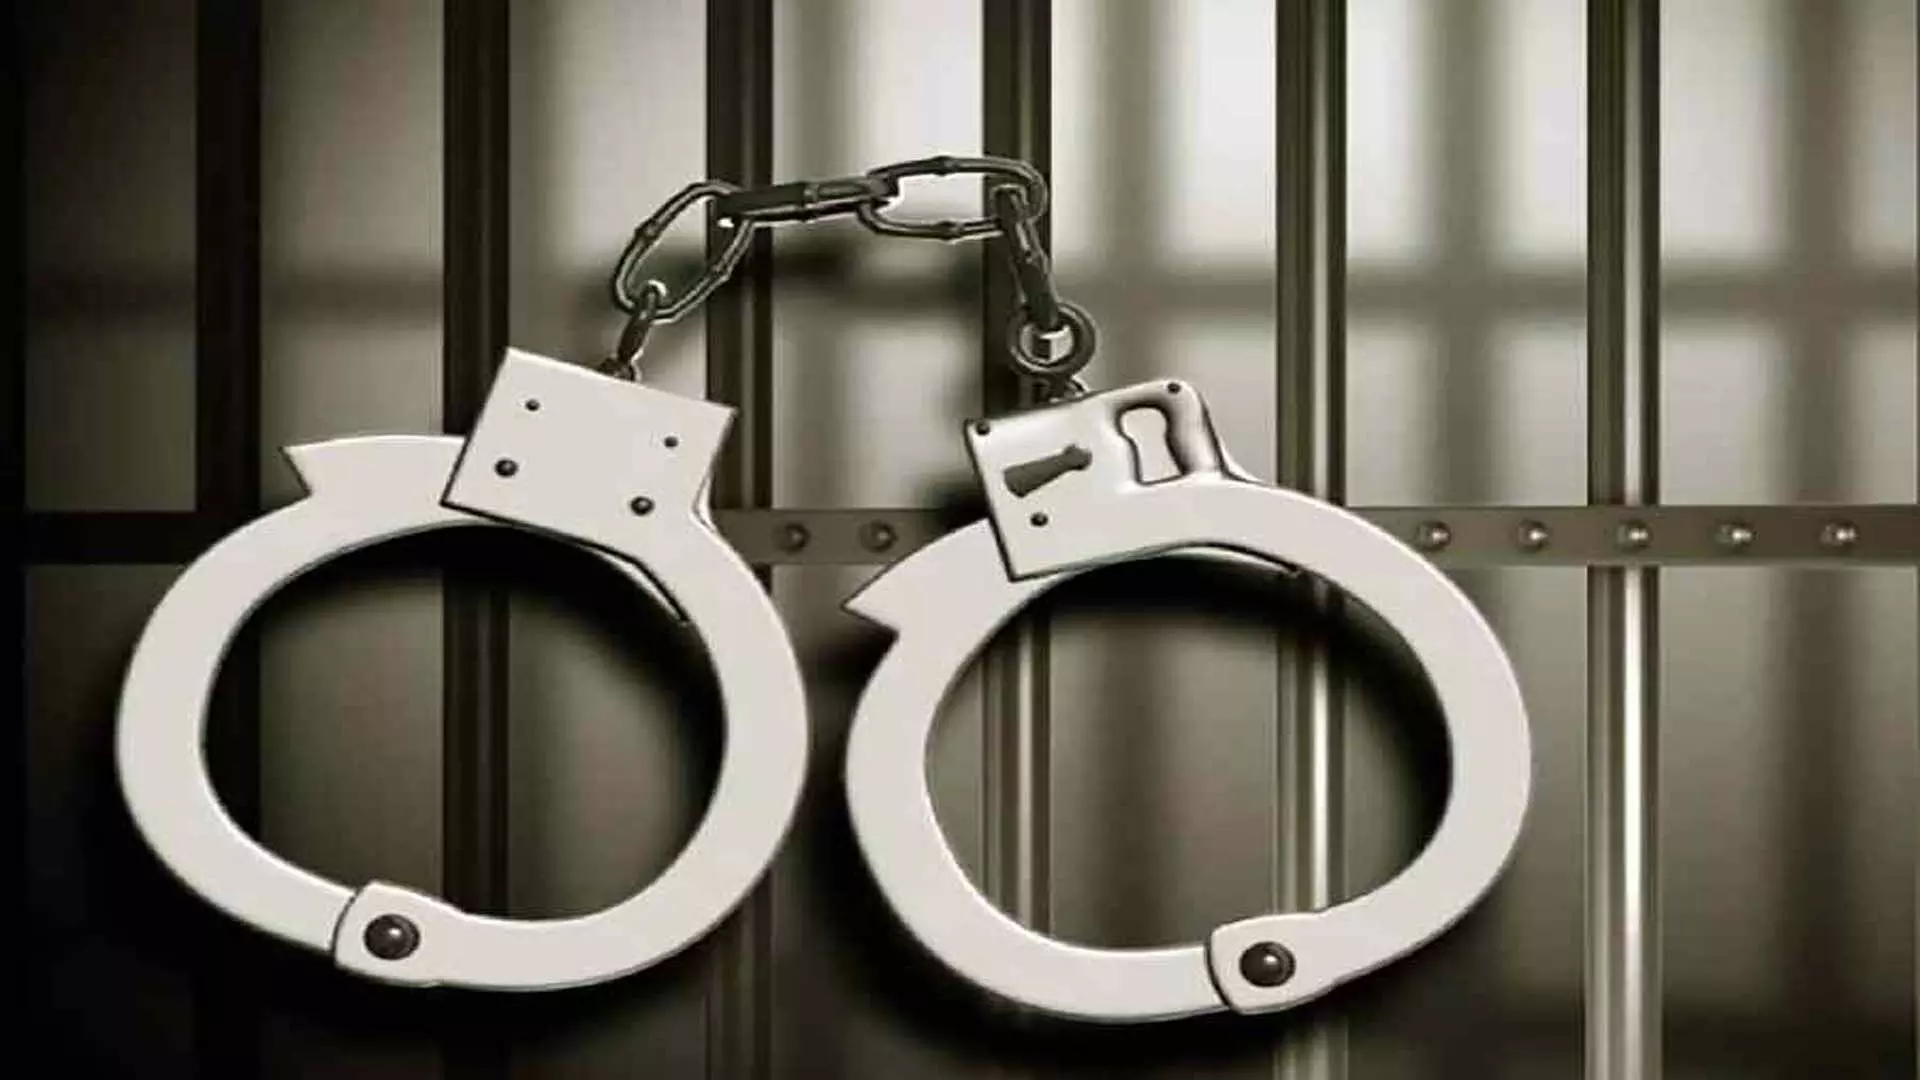 मणिपुर पुलिस ने चिंगारेल में इंडिया रिजर्व बटालियन शिविर से हथियार लूटने के आरोप में छह को गिरफ्तार किया